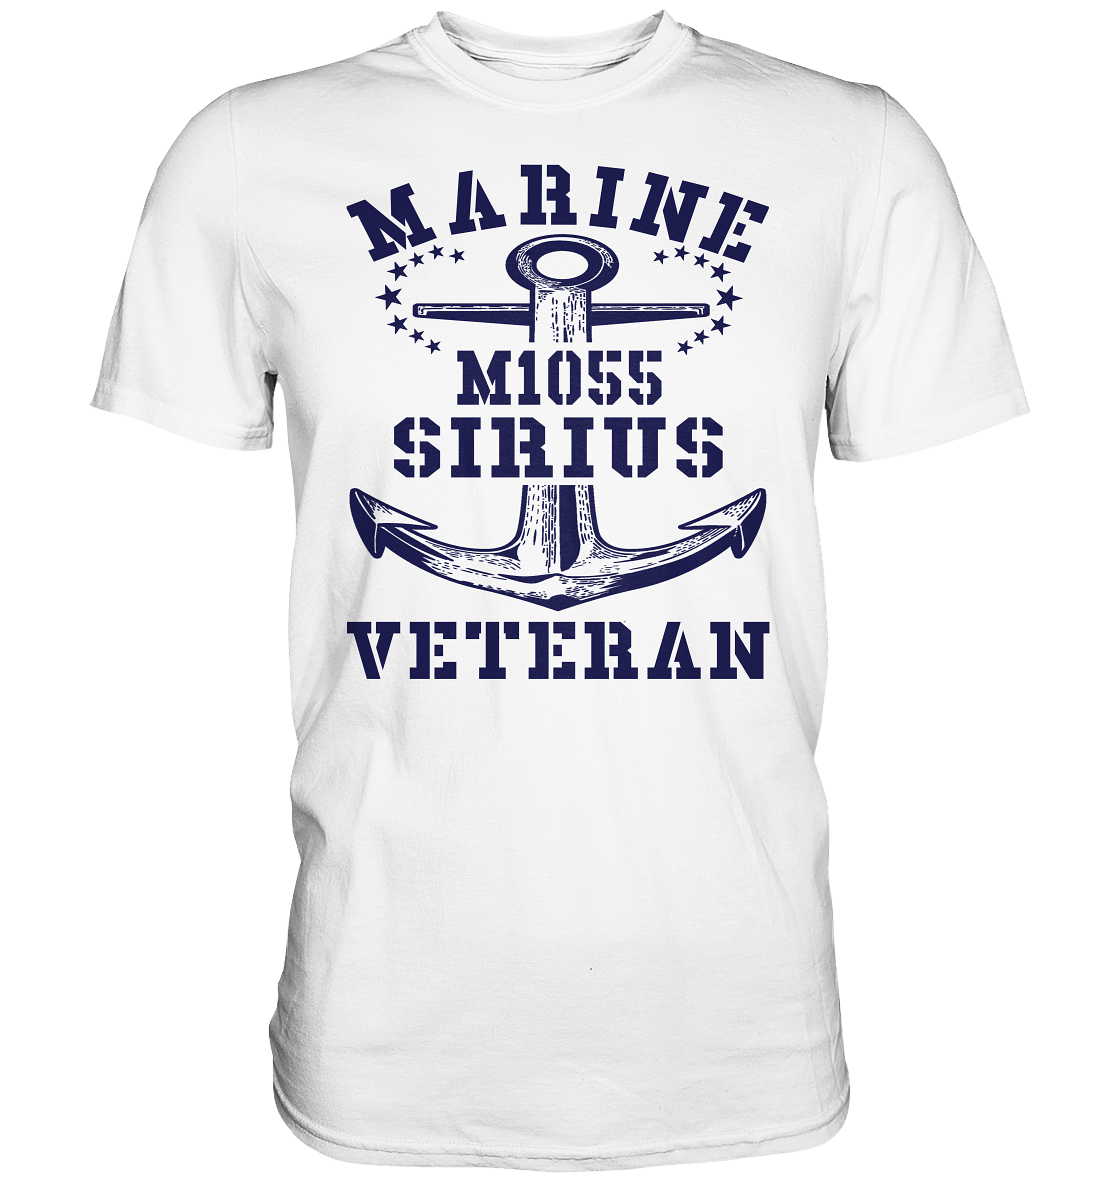 SM-Boot M1055 SIRIUS Marine Veteran - Premium Shirt